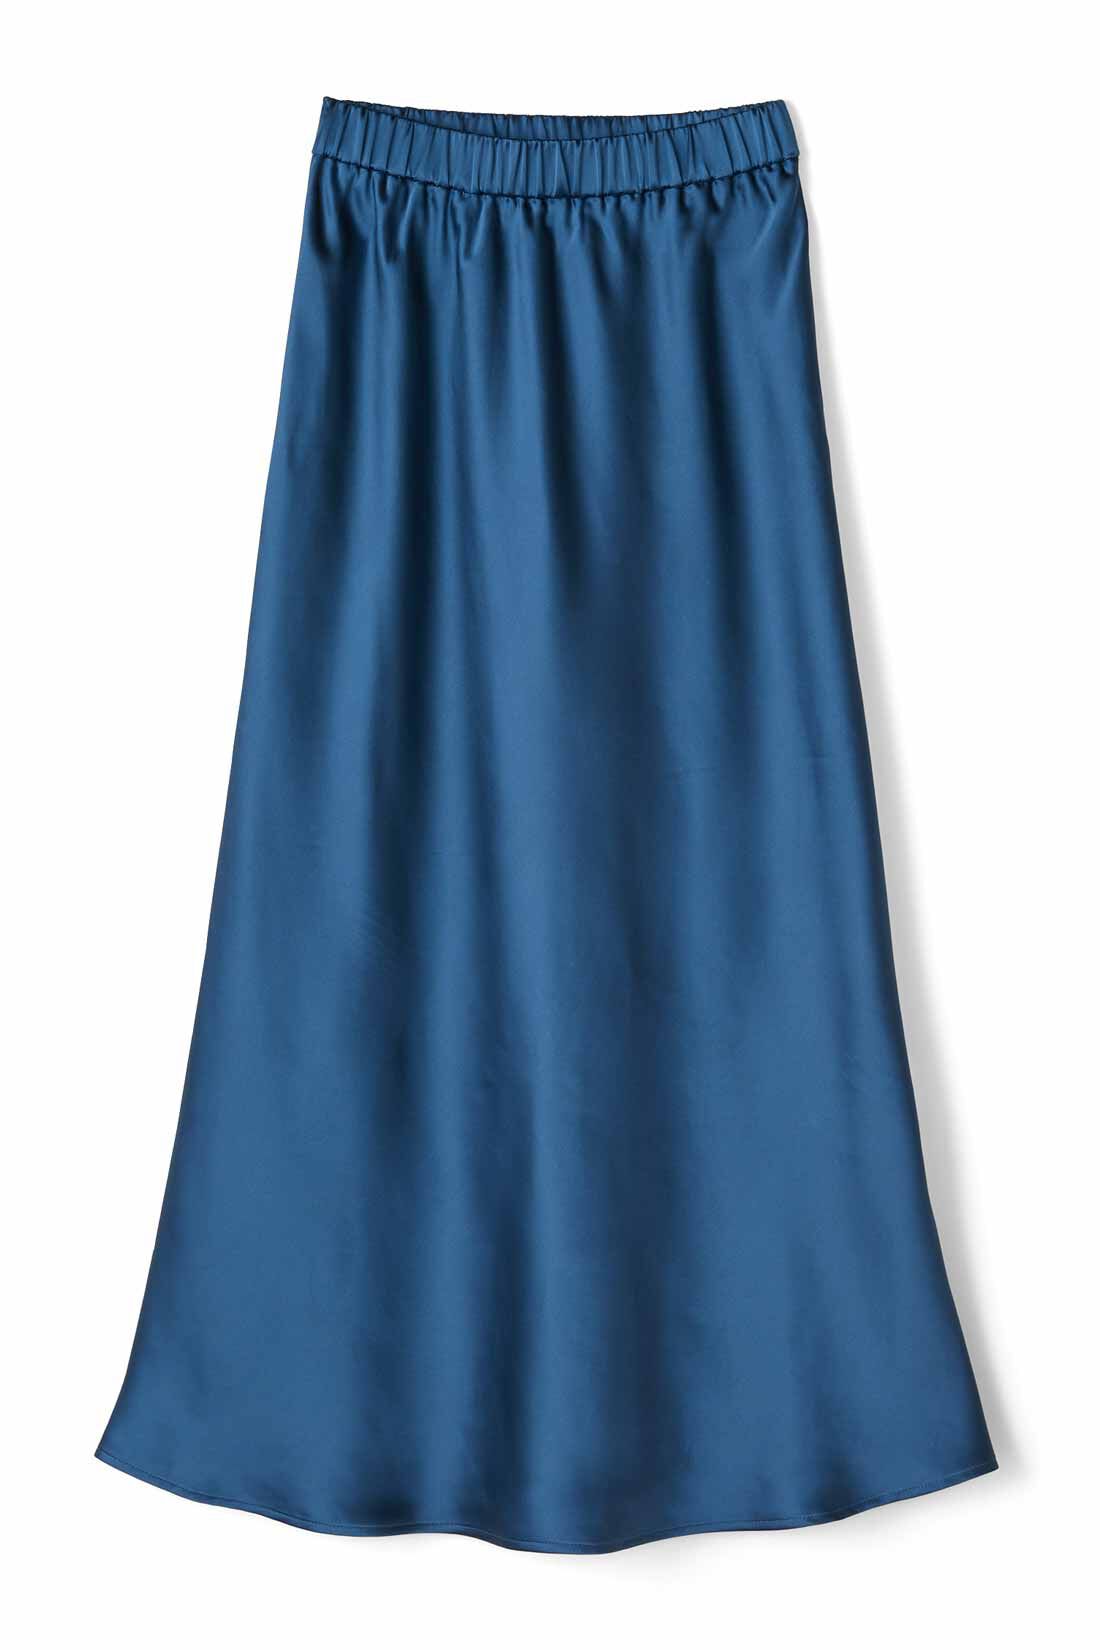 IEDIT[イディット]　サテンの光沢が美しいセミサーキュラースカート〈ベージュ〉|〈ディープブルー〉